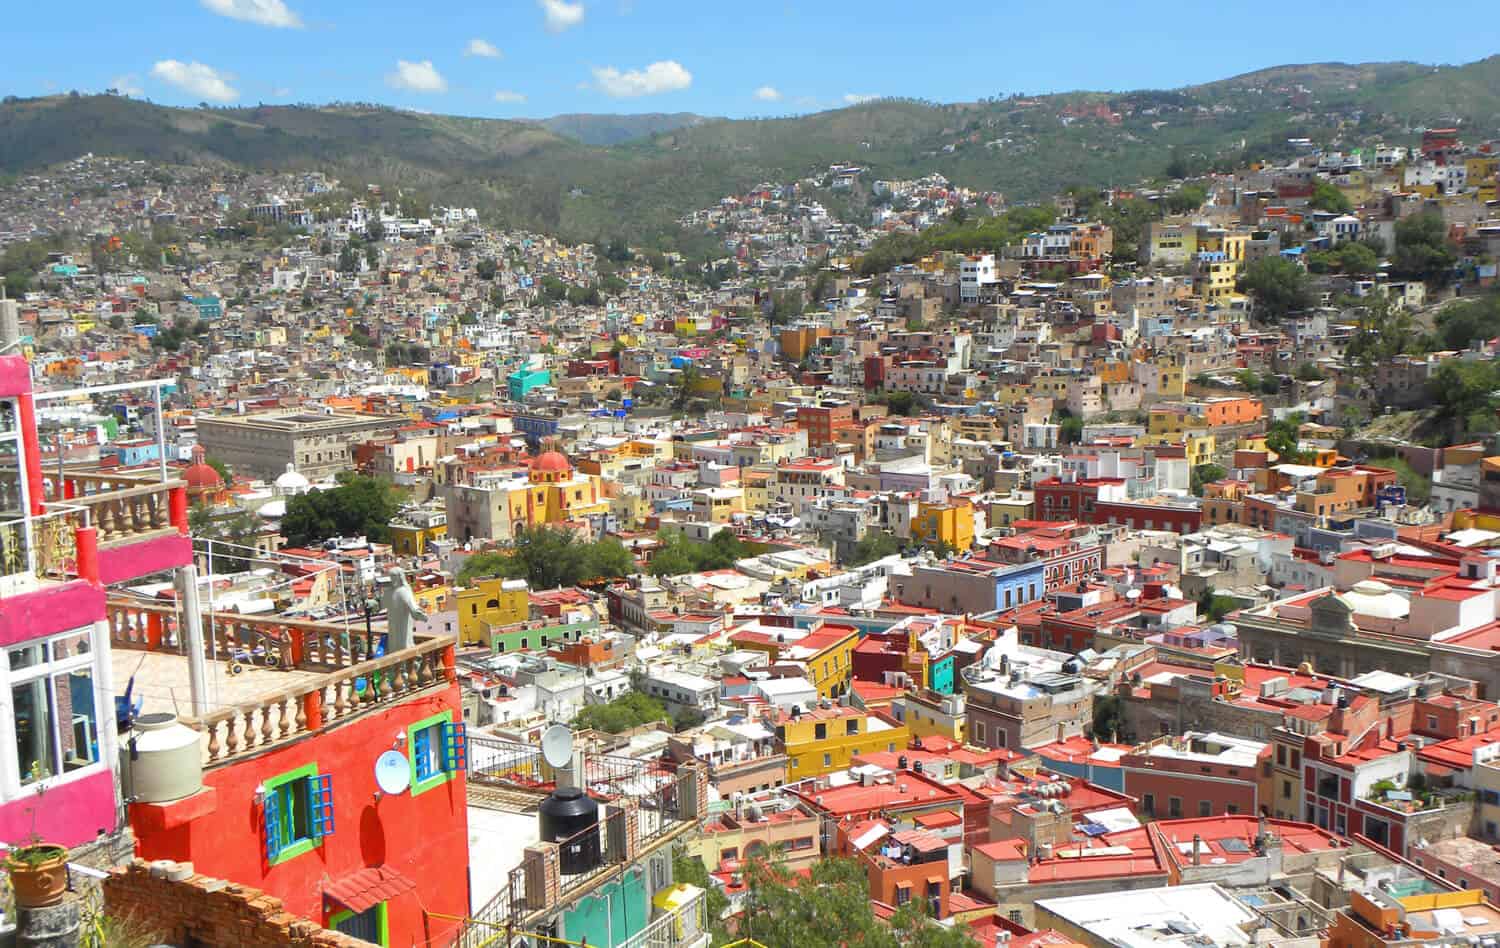 views in Guanajuato Mexico